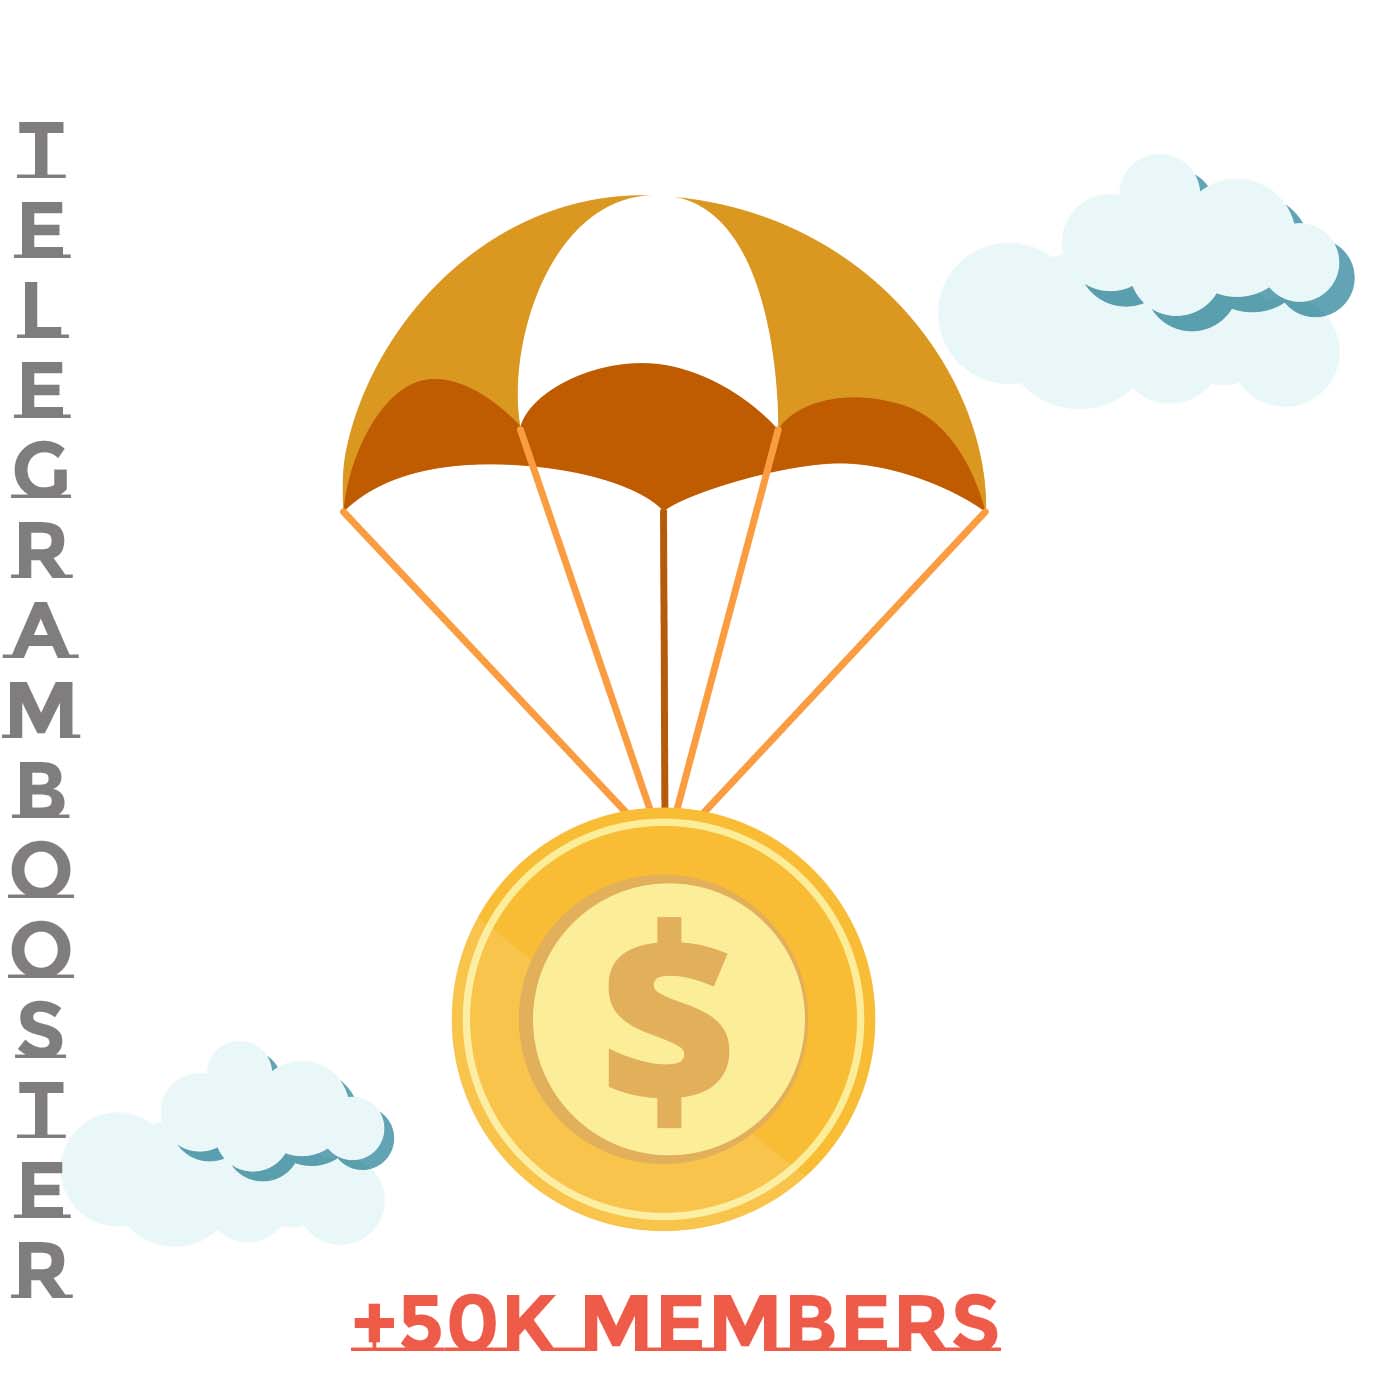 Crypto airdrop campaign 50k telegram members by Telegram rocket package